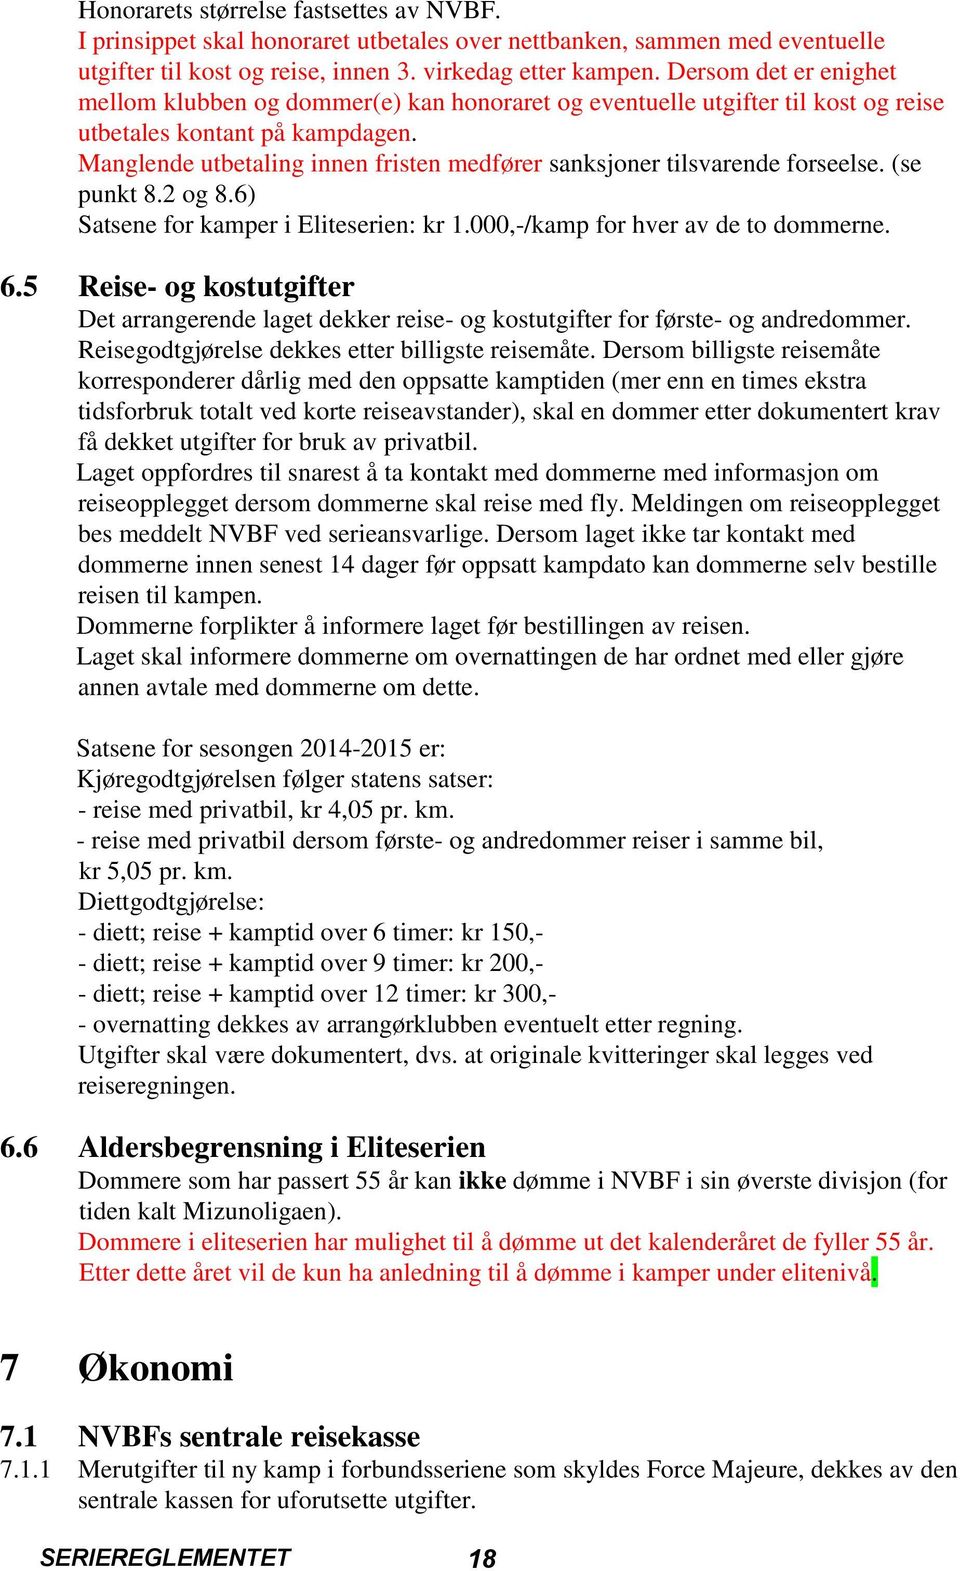 Manglende utbetaling innen fristen medfører sanksjoner tilsvarende forseelse. (se punkt 8.2 og 8.6) Satsene for kamper i Eliteserien: kr 1.000,-/kamp for hver av de to dommerne. 6.